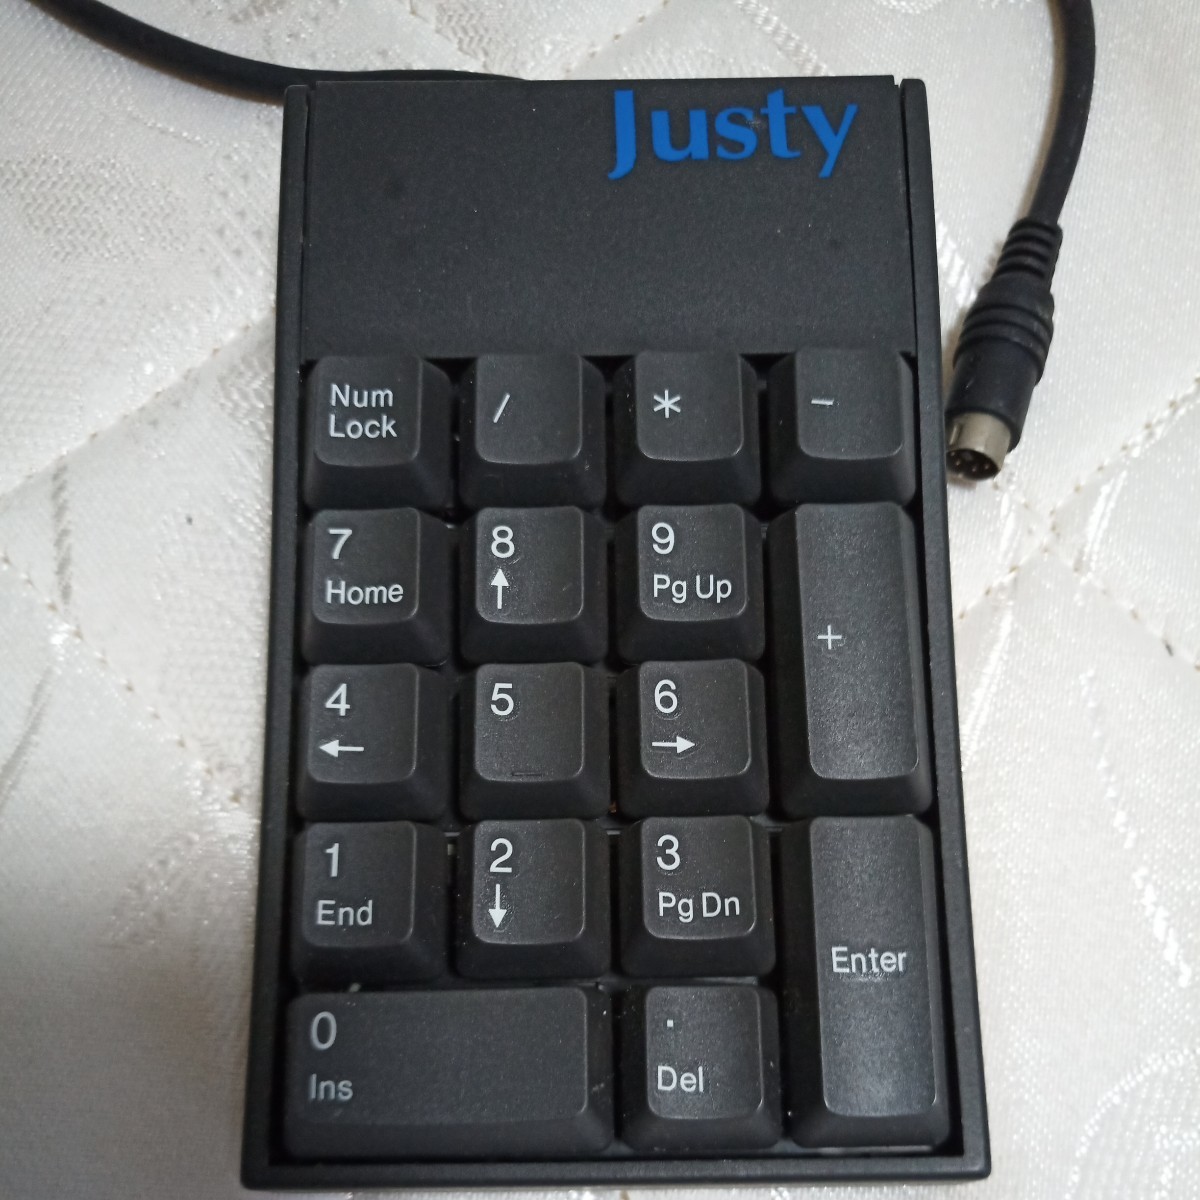  цифровая клавиатура PS/2 цифровая клавиатура цифровая клавиатура PS/2 цифровая клавиатура персональный компьютер принадлежности PC принадлежности PC для цифровая клавиатура Justy